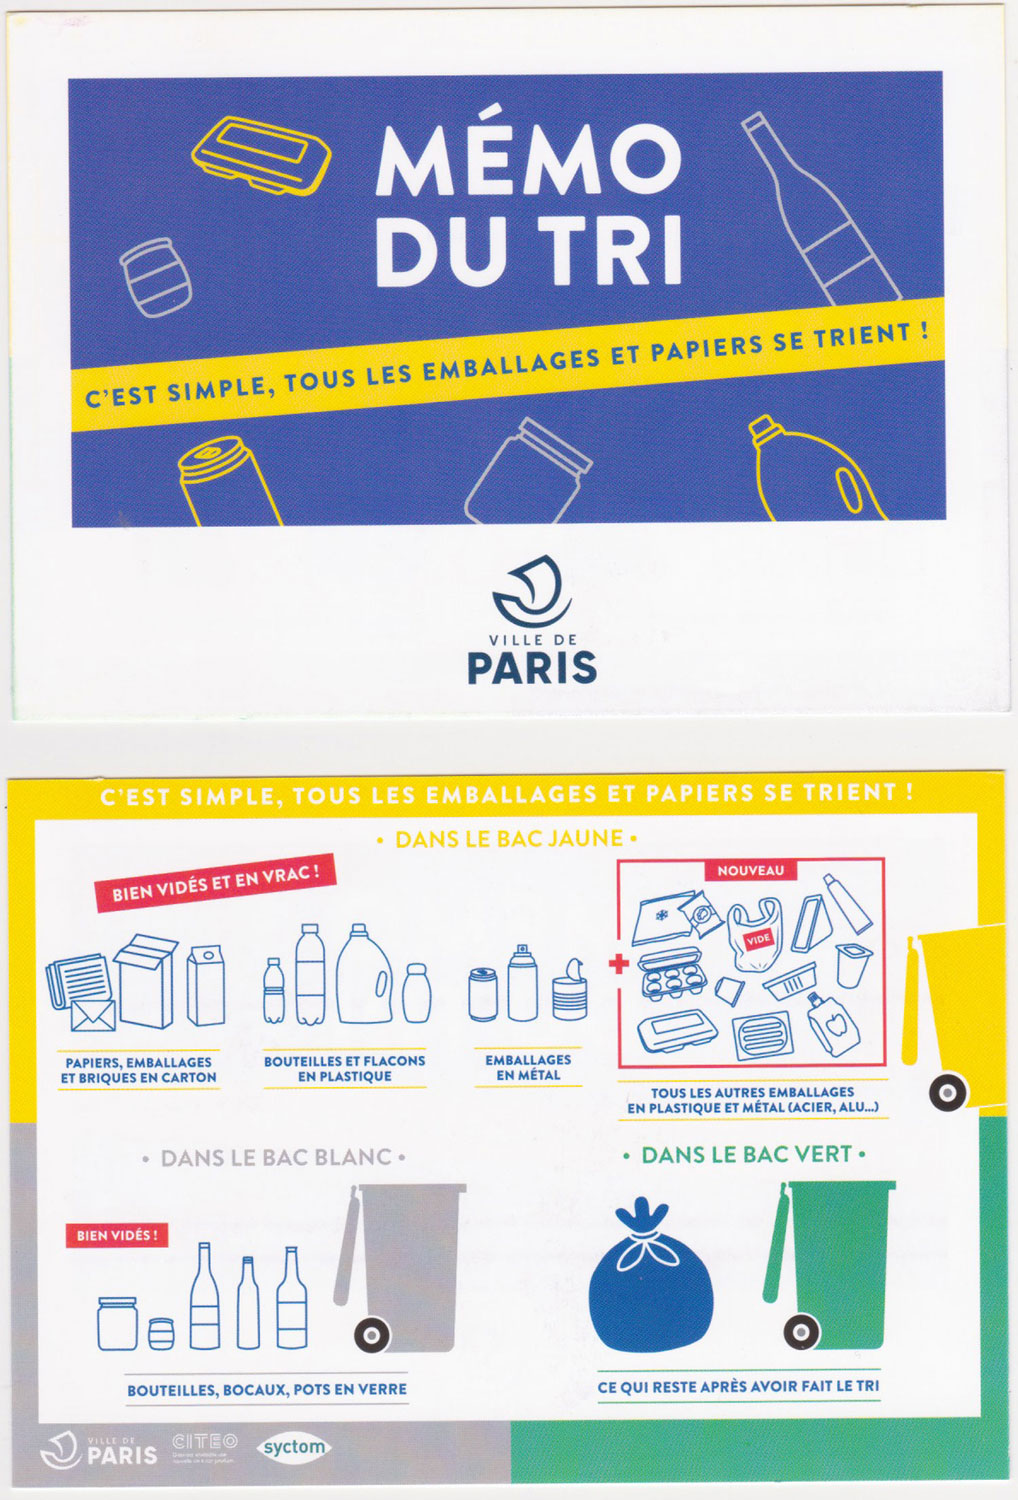 La Mairie de Paris, émet de nombreuses petites cartes à distribuer notamment dans les boites aux lettres qui rappellent comment trier. À Paris tous les emballages vont dans la poubelle jaune. Il ne faut pas tenir compte du petit sigle sur les emballages qui disent de jeter à la poubelle © Globe Reporters